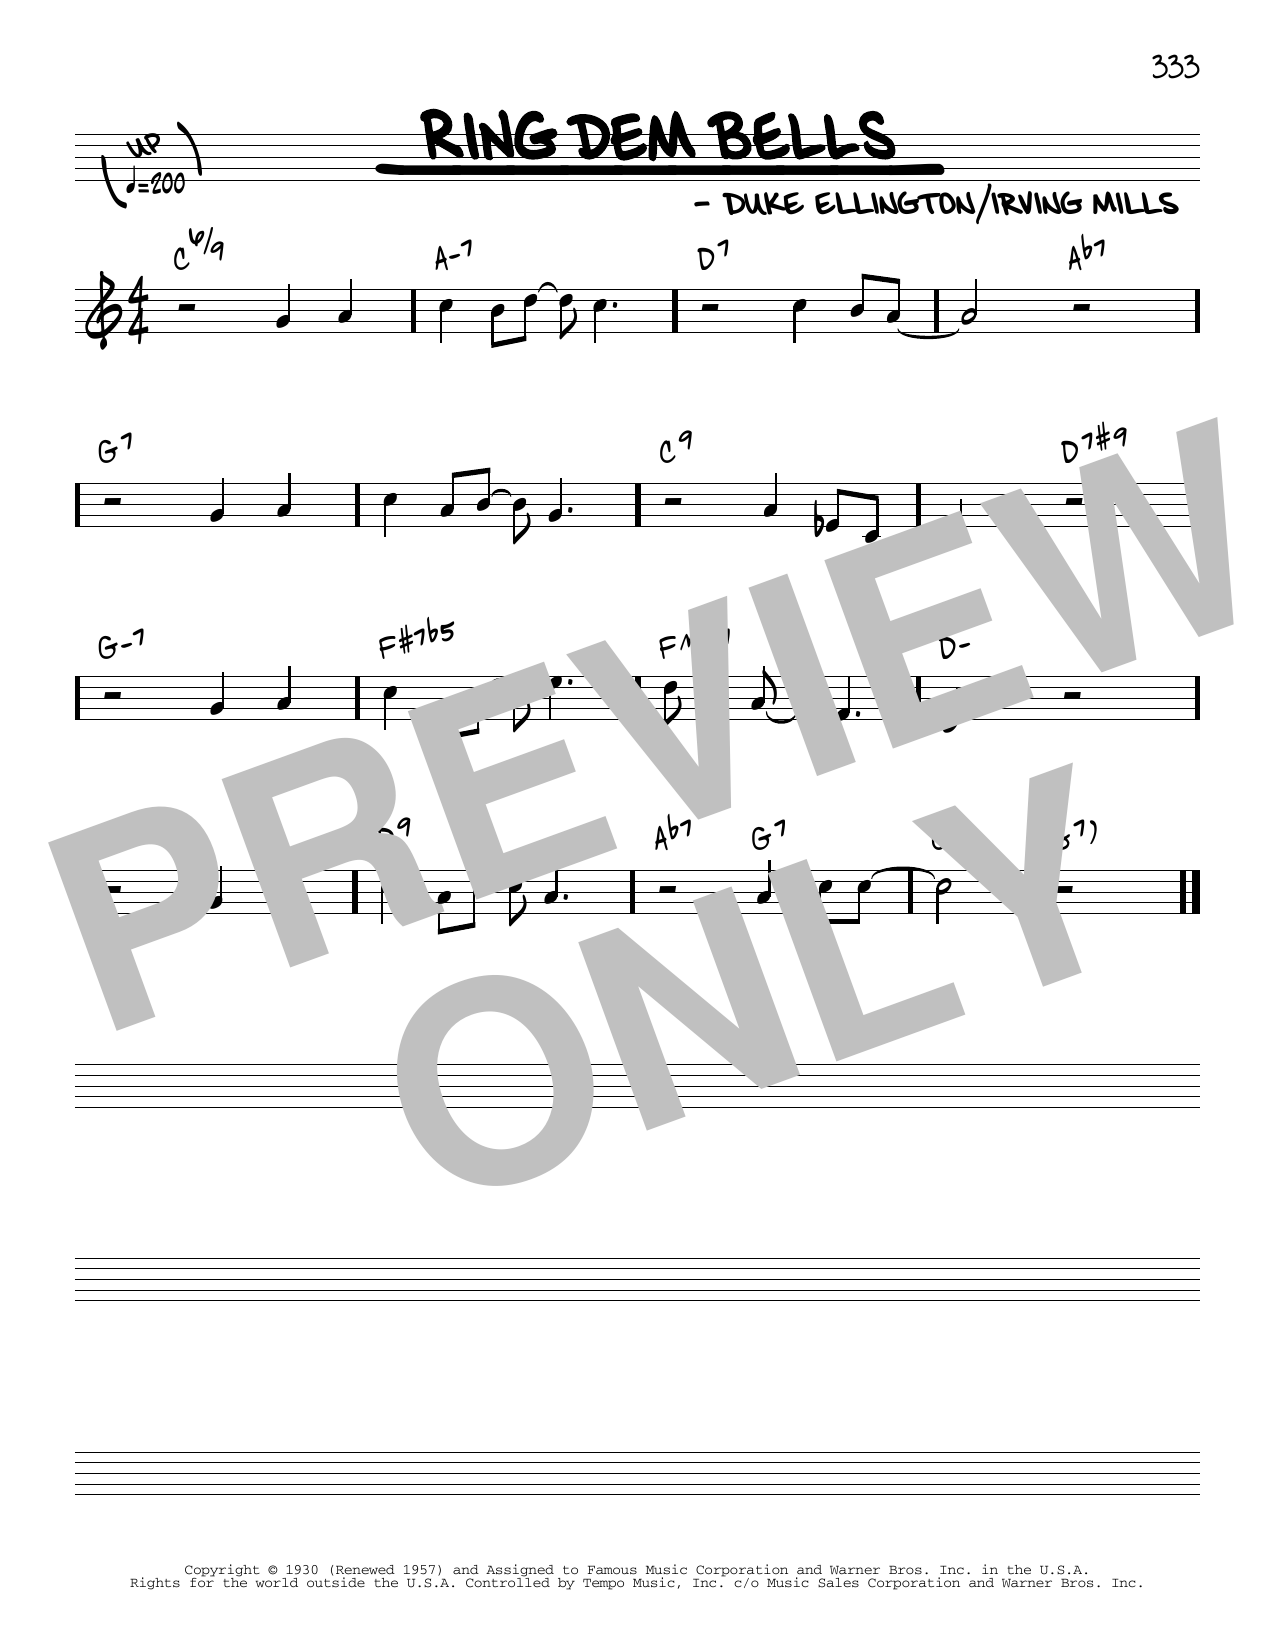 Download Duke Ellington Ring Dem Bells [Reharmonized version] ( Sheet Music